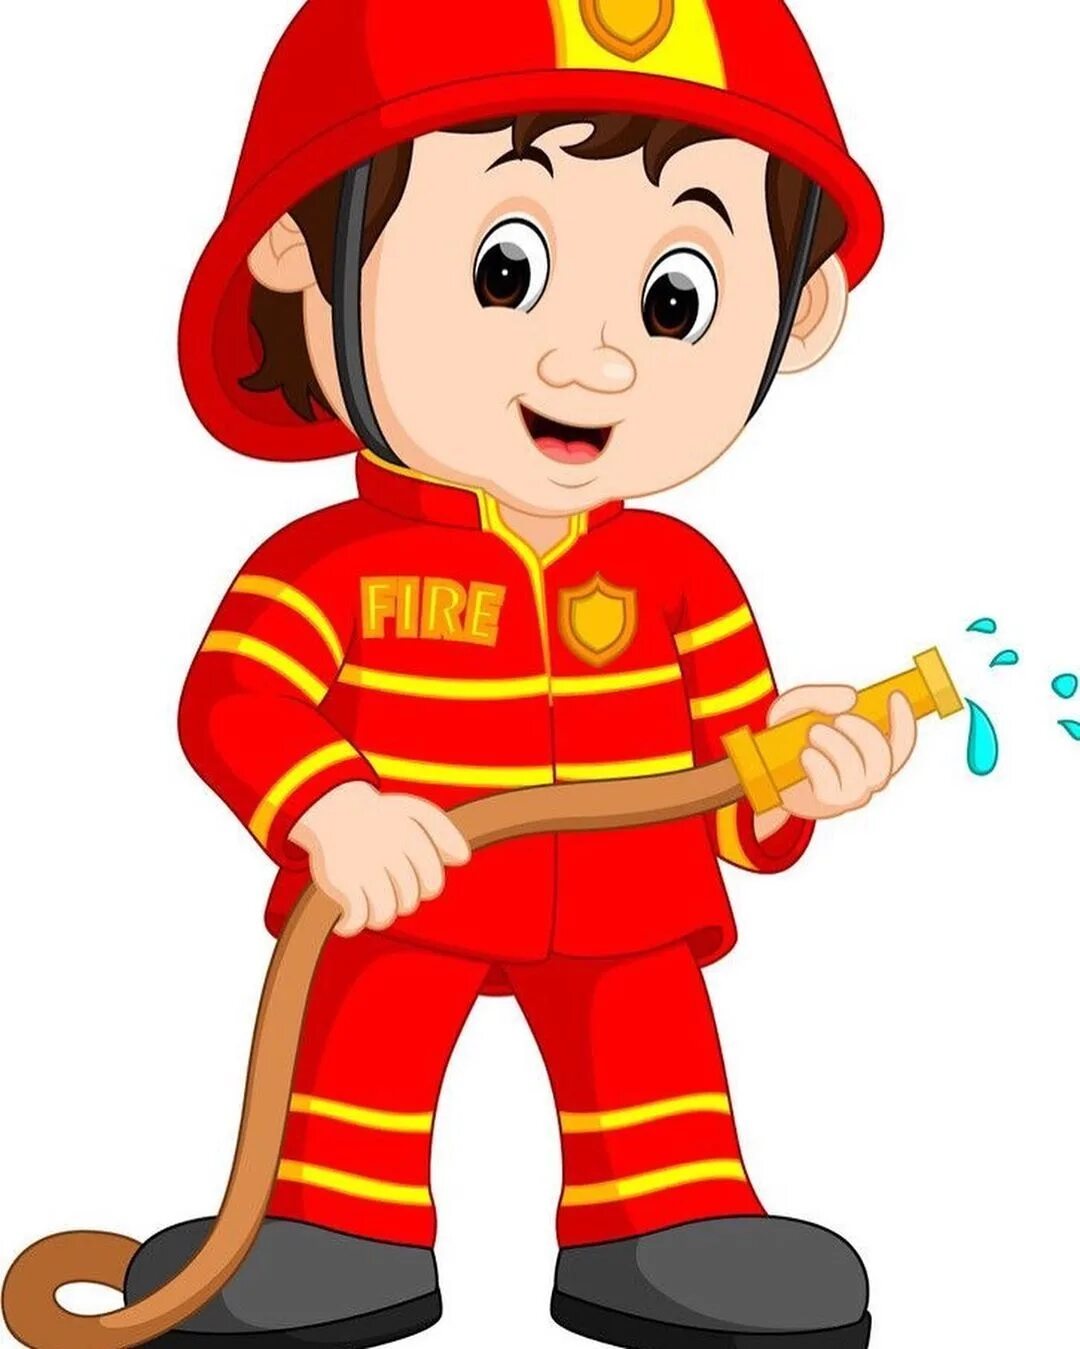 Пожарники в детском саду. Для детей. Пожарные. Пожарник для детского сада. Пожарный для детей в детском саду. Профессия пожарник.